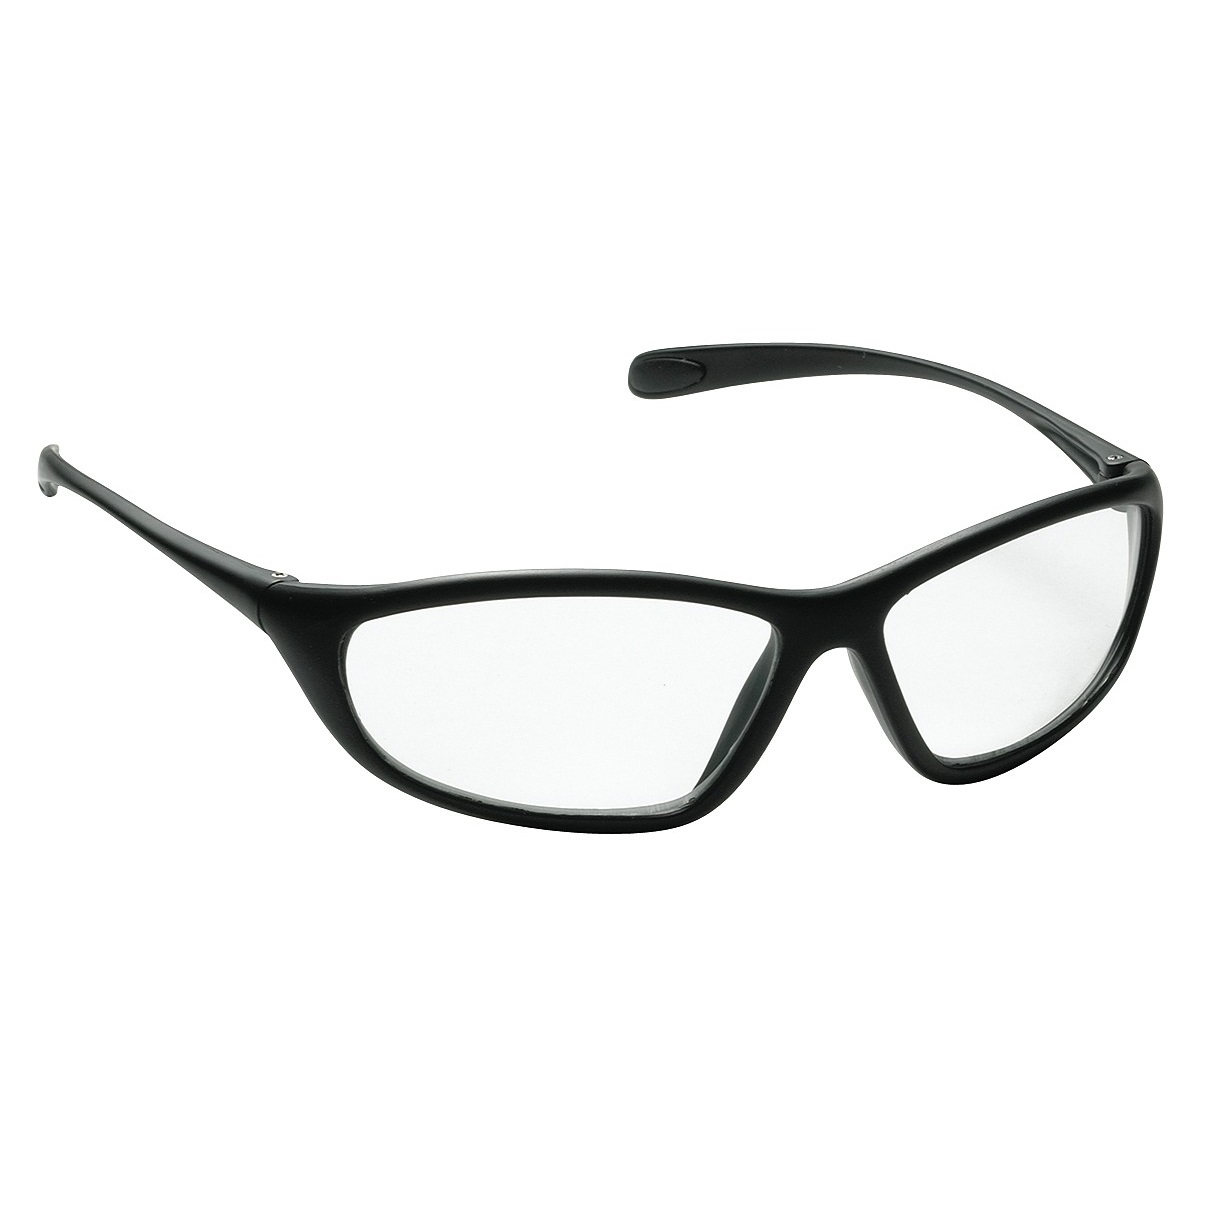 Spyder Safety Glasses, Black Frame, Clear Lens